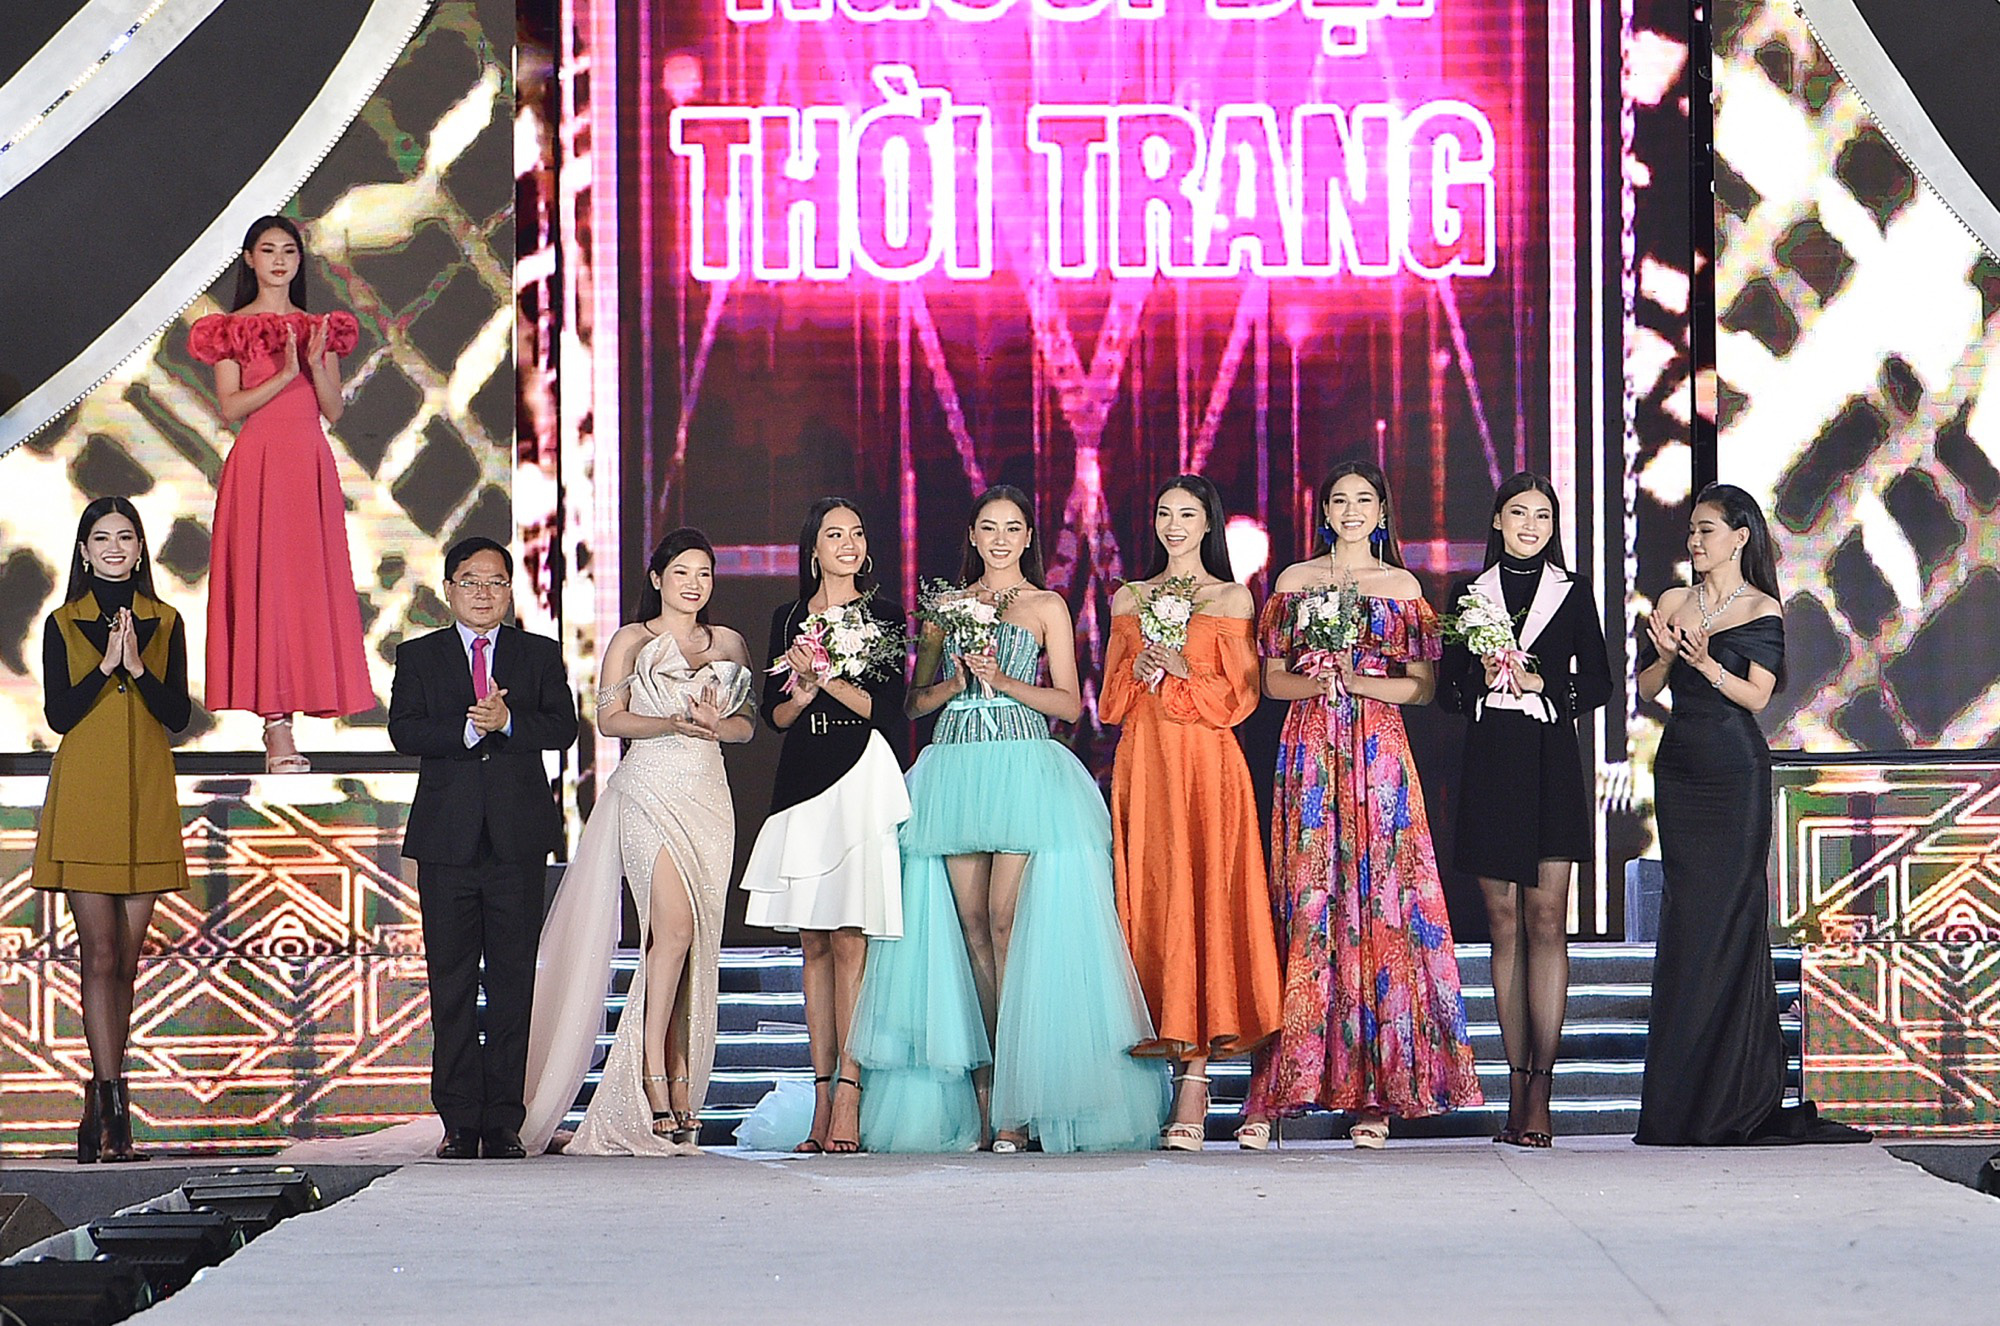 Hoa hậu Việt Nam tỏa sáng trong đêm thi Người đẹp Thời trang - Ảnh 4.